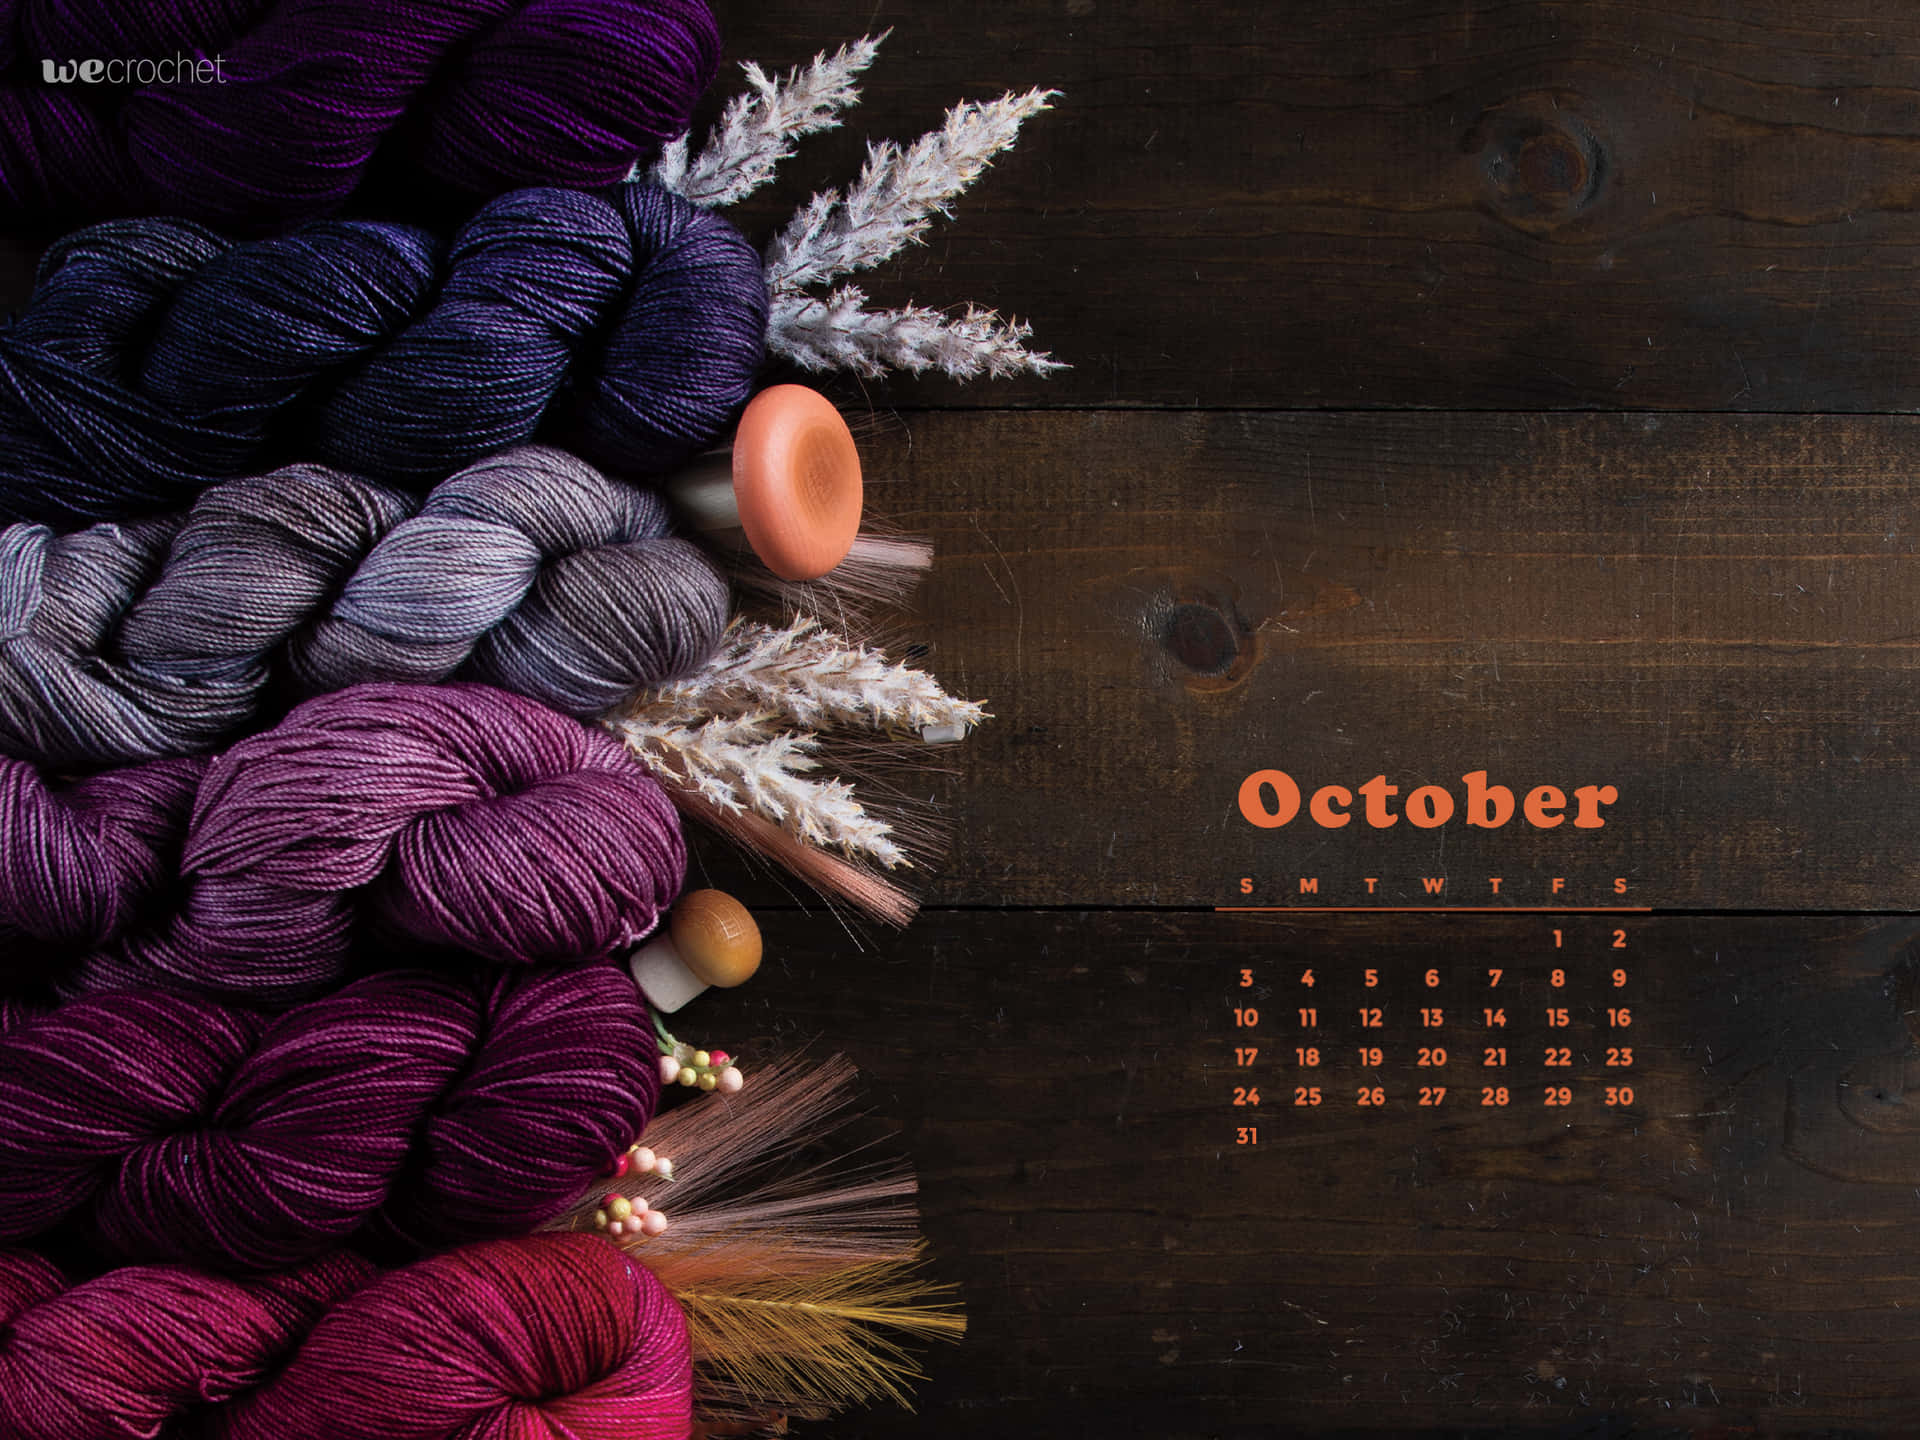 Oktoberkalender Hintergrundbild Mit Garn Und Wolle Wallpaper